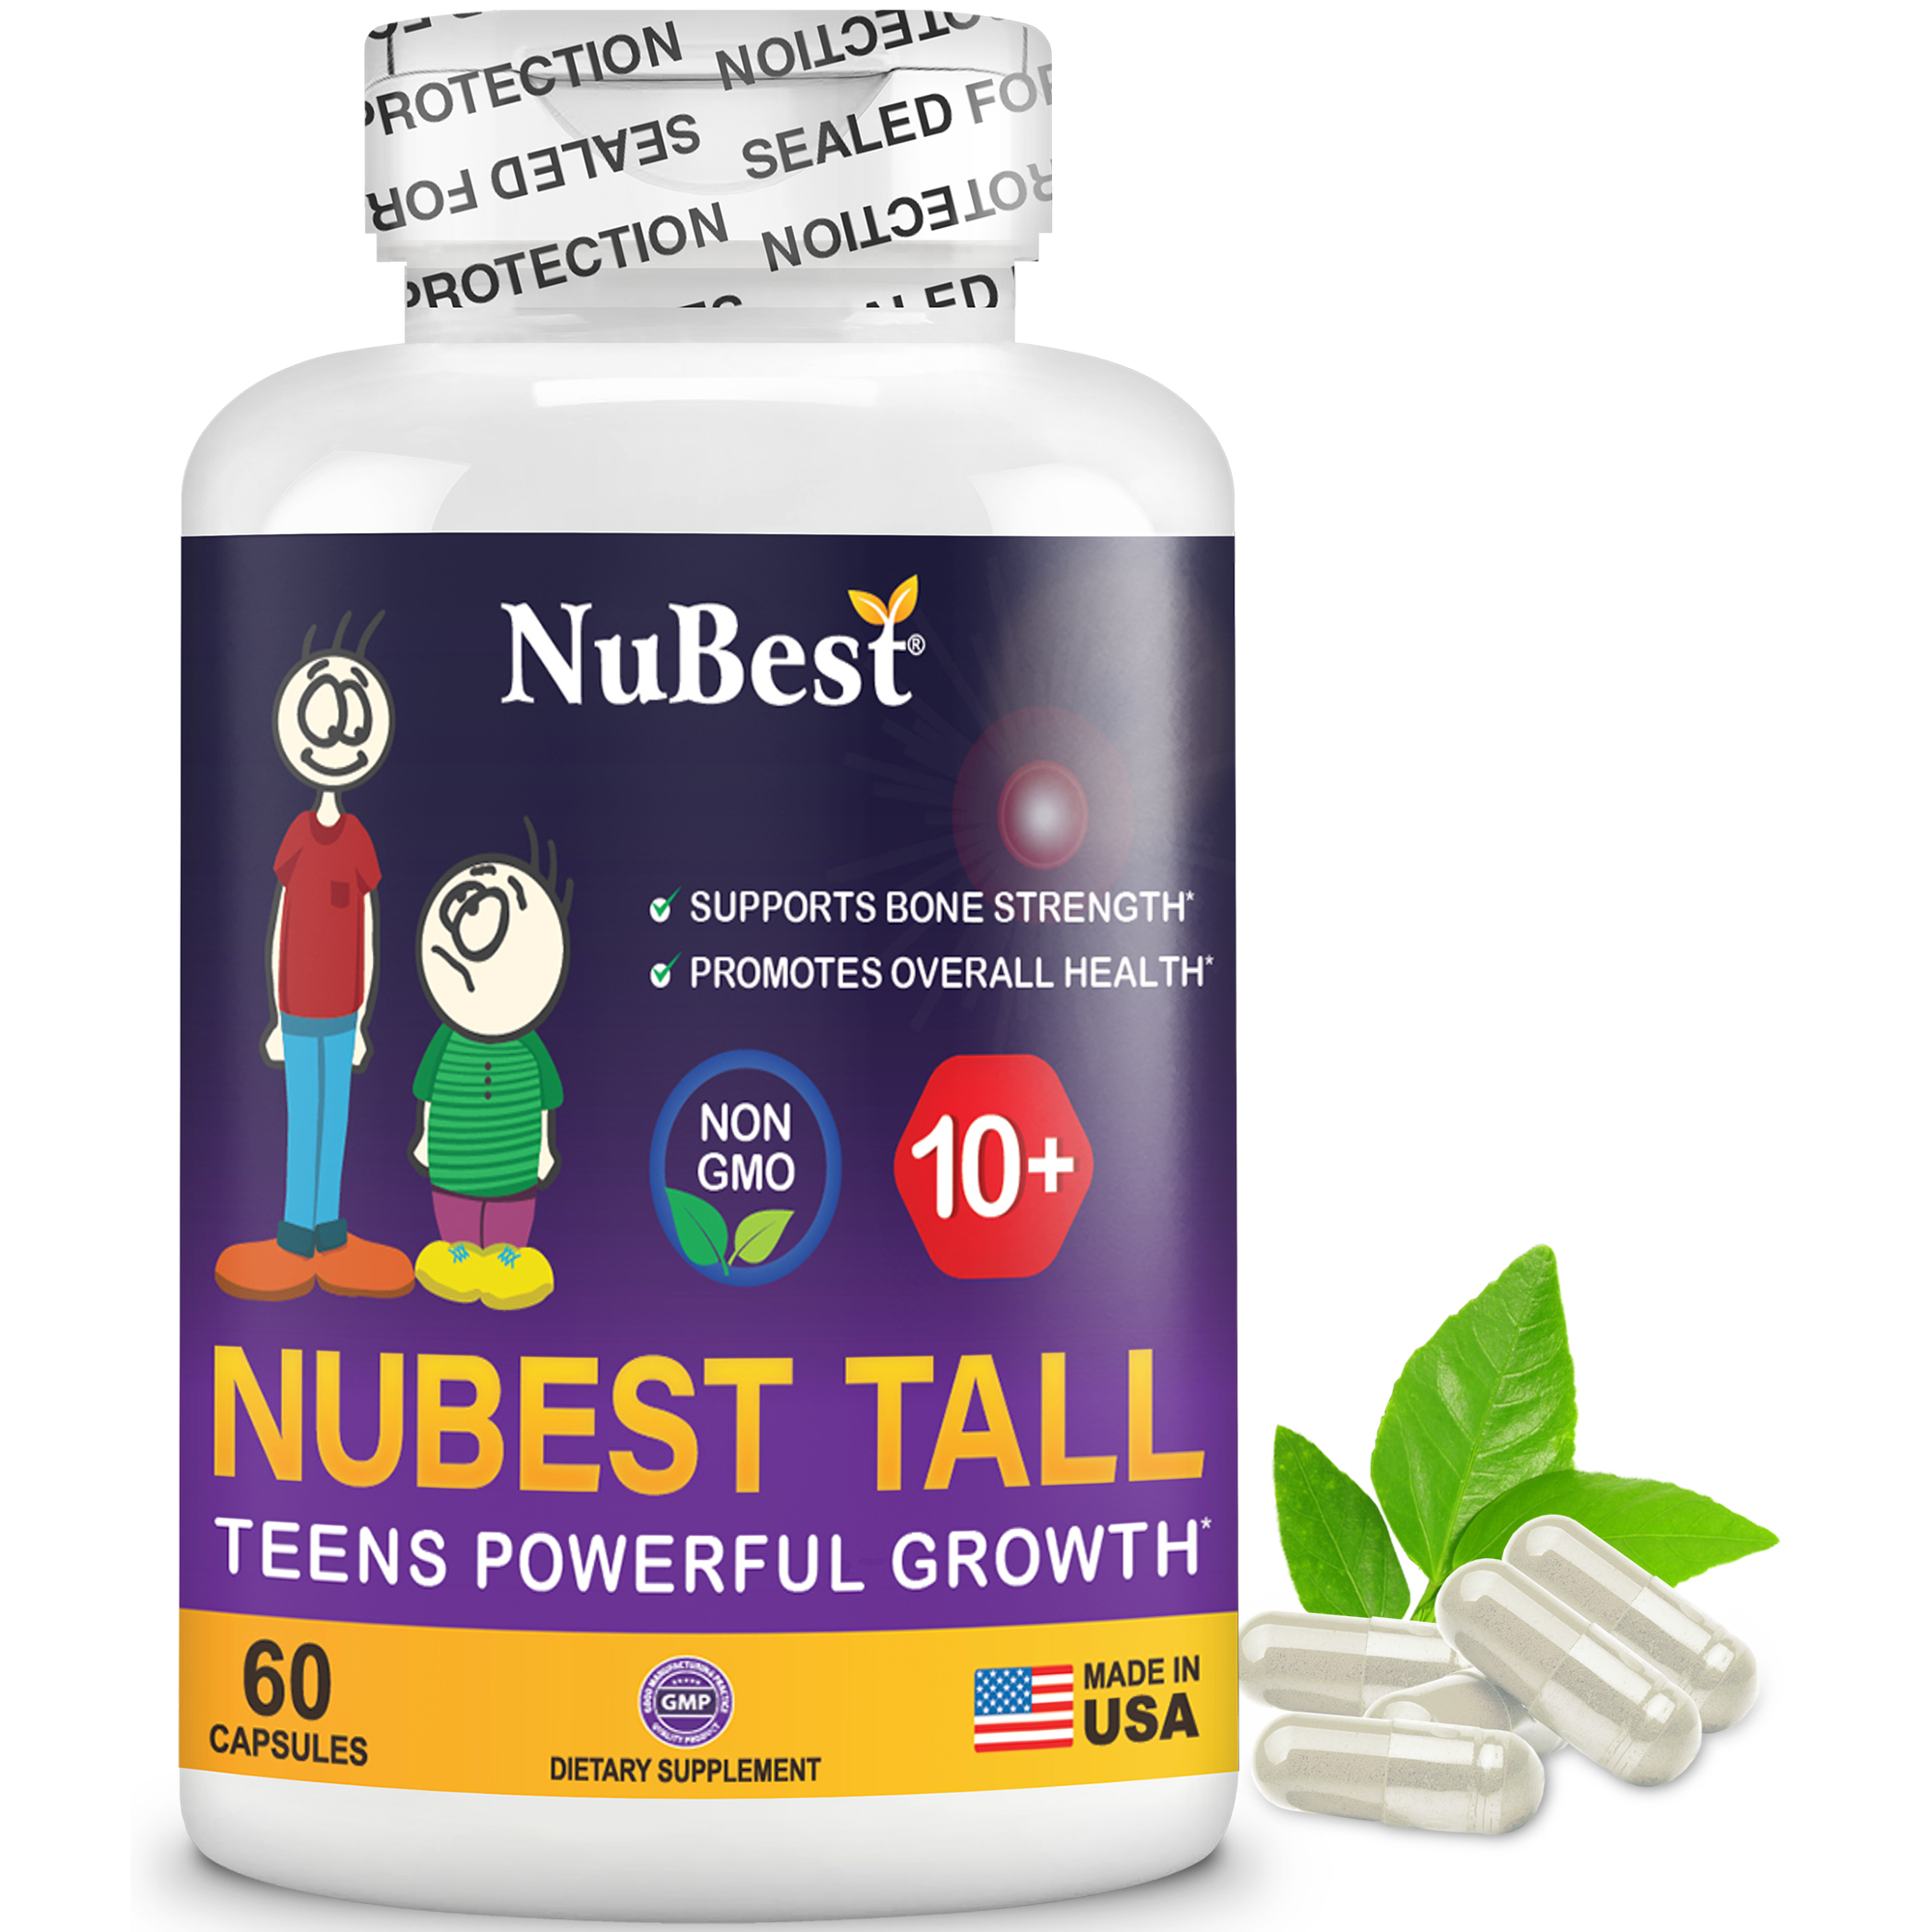 NuBest Tall 10+ Hộp 60 Viên trẻ trên 10 tuổi - Thực Phẩm Bảo Vệ Sức Khoẻ